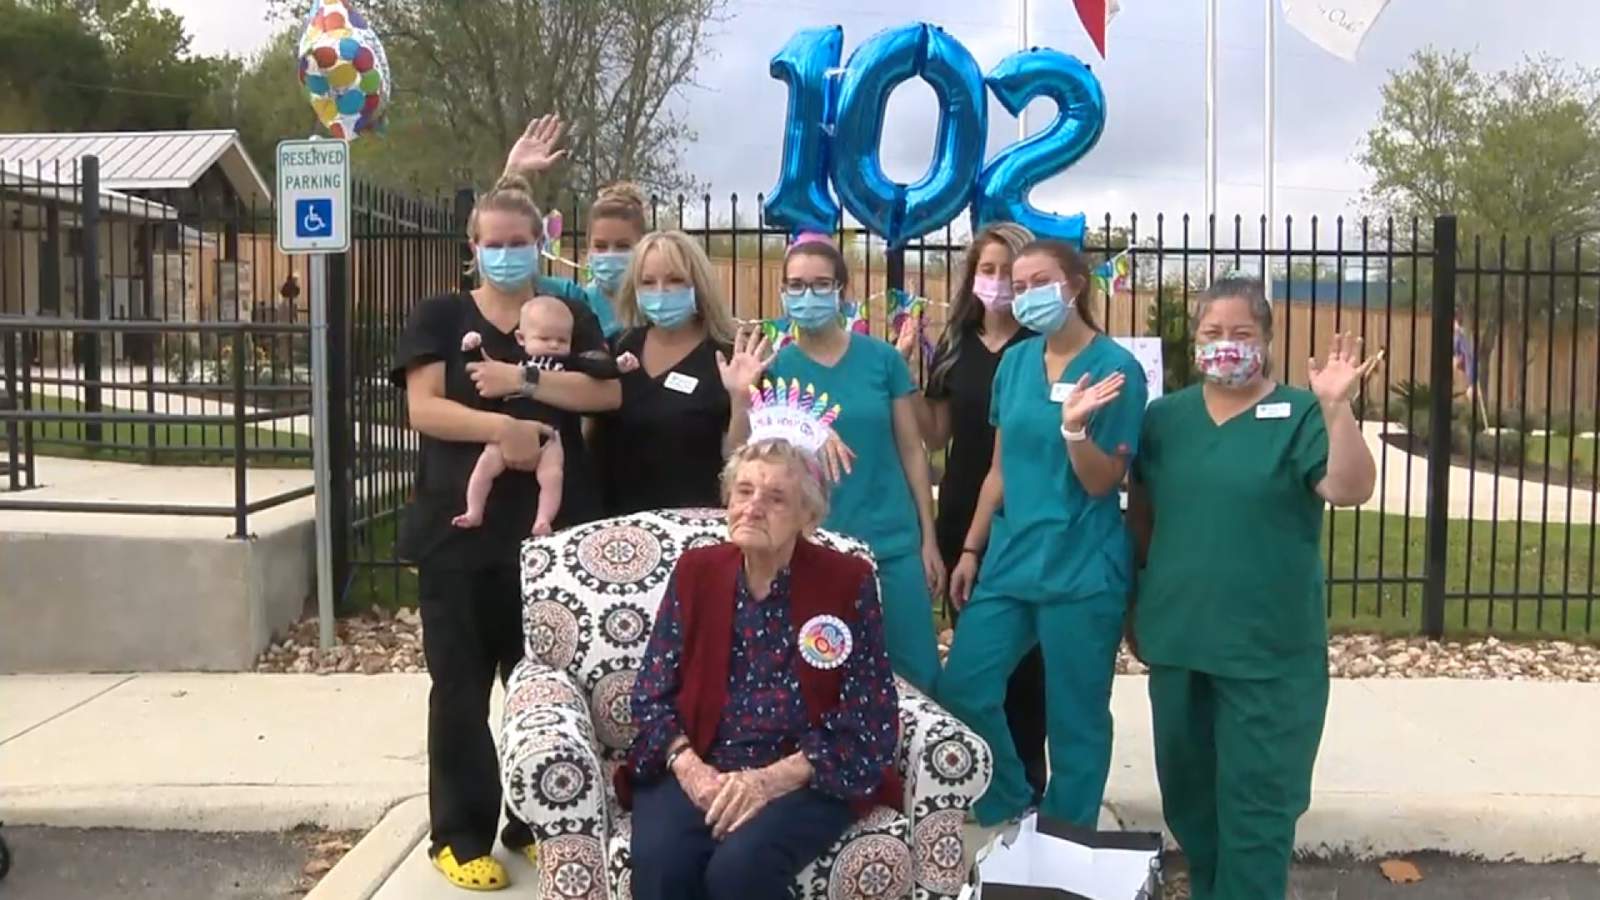 Live Oak resident celebrates turning 102 with parade